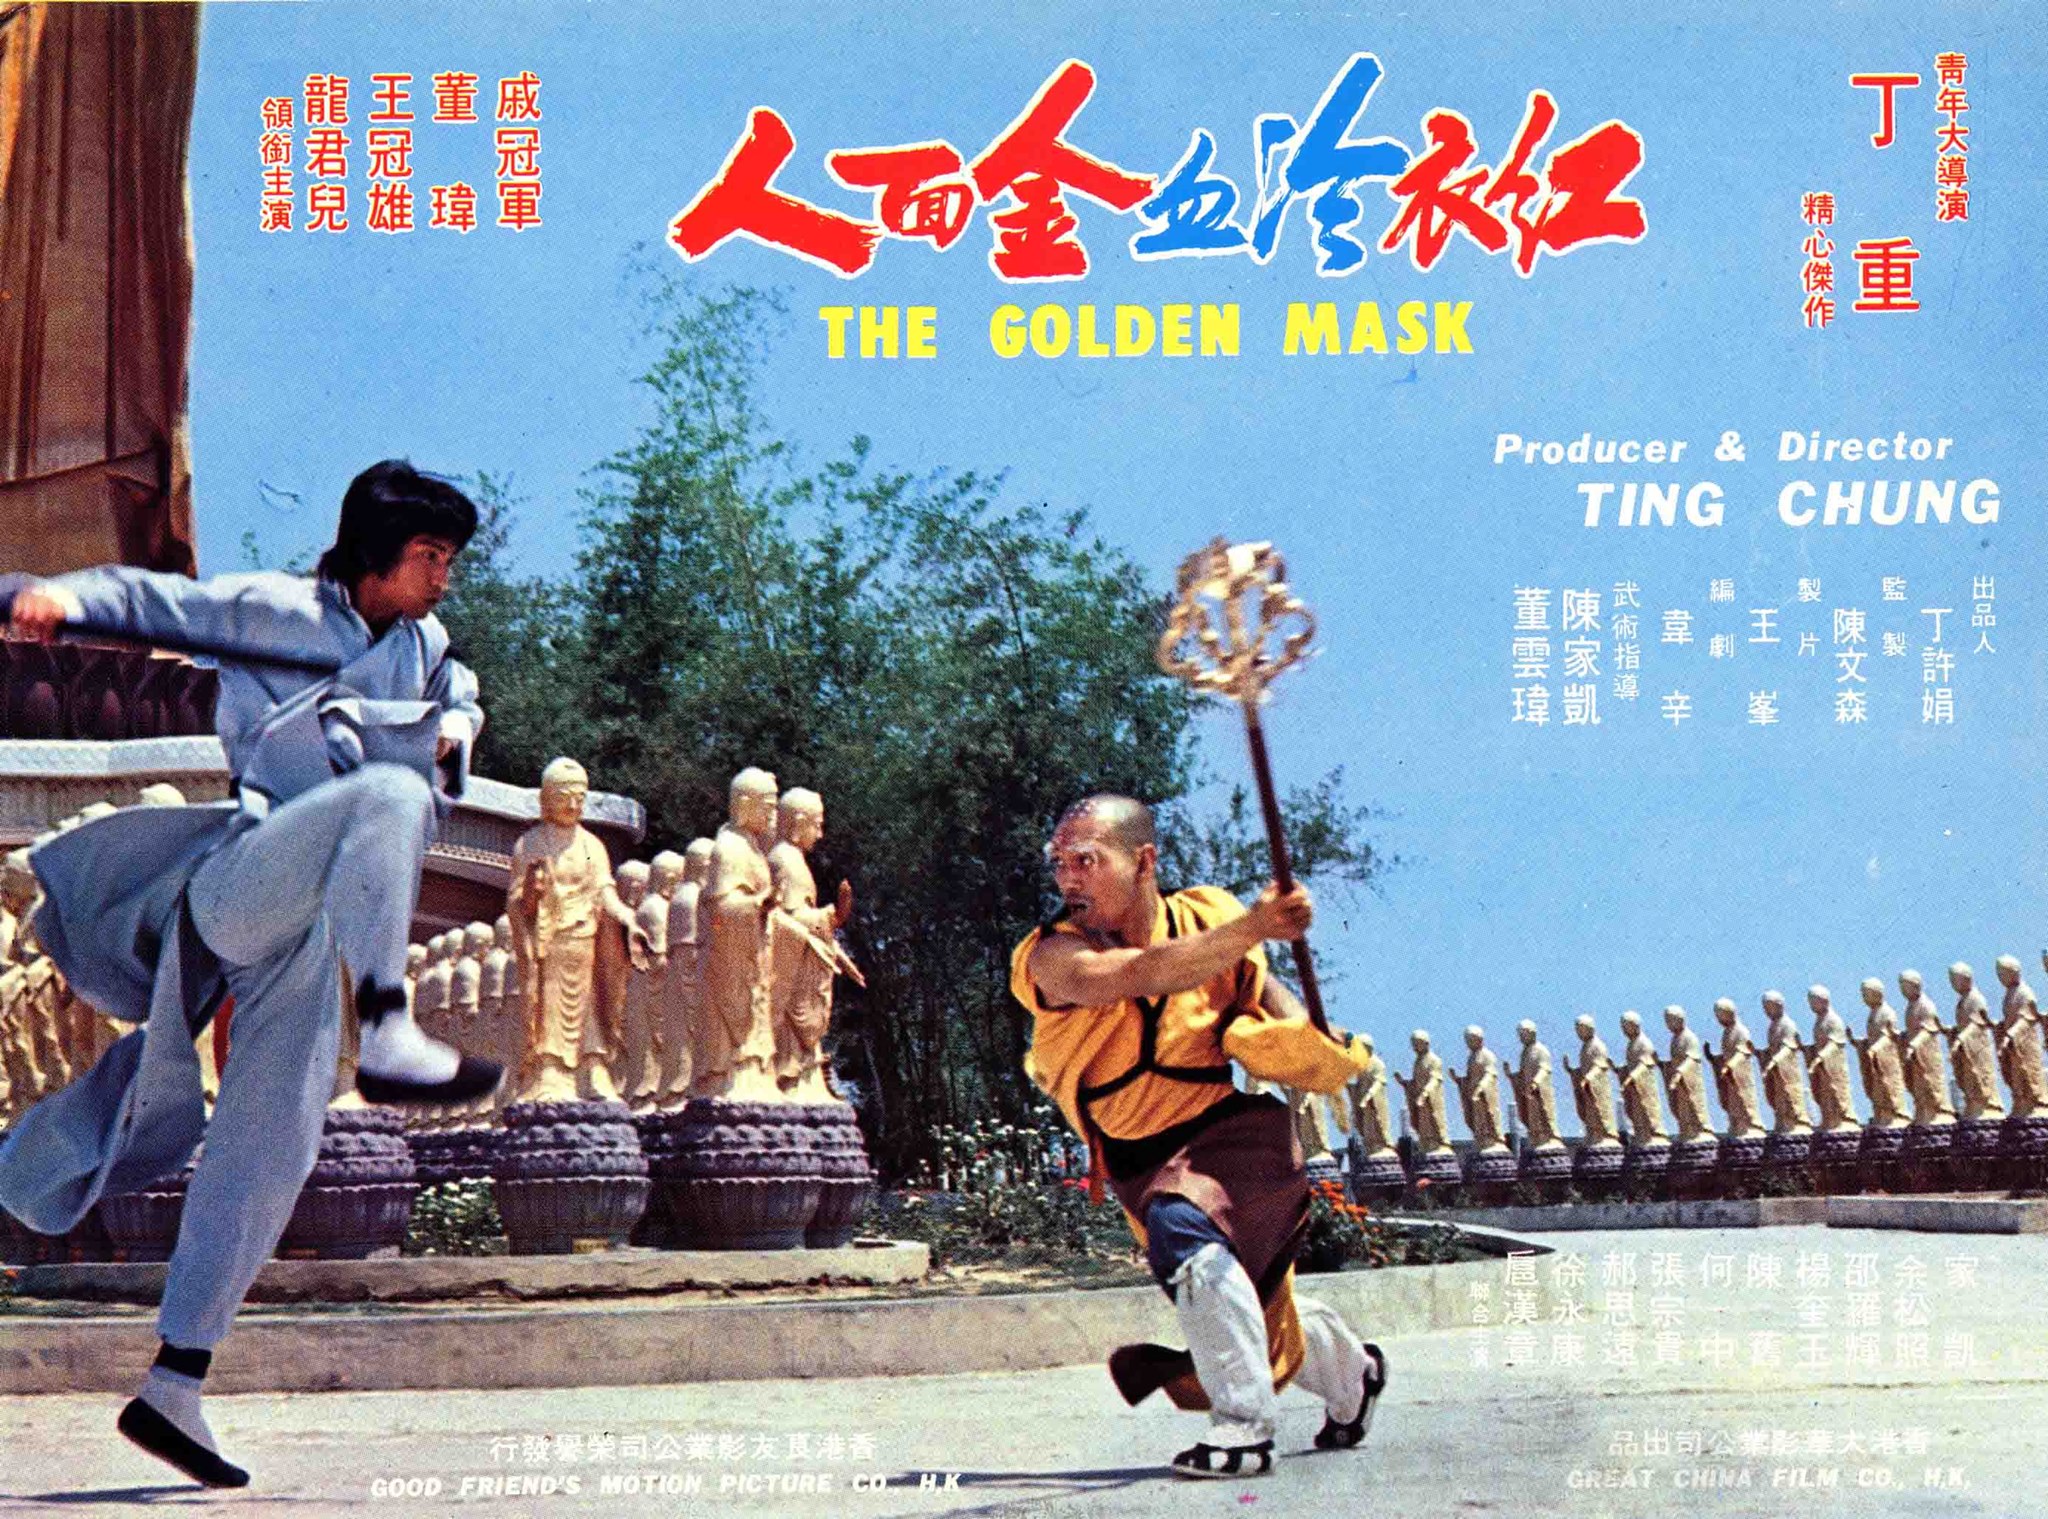 Golden Mask (1977) Screenshot 1 